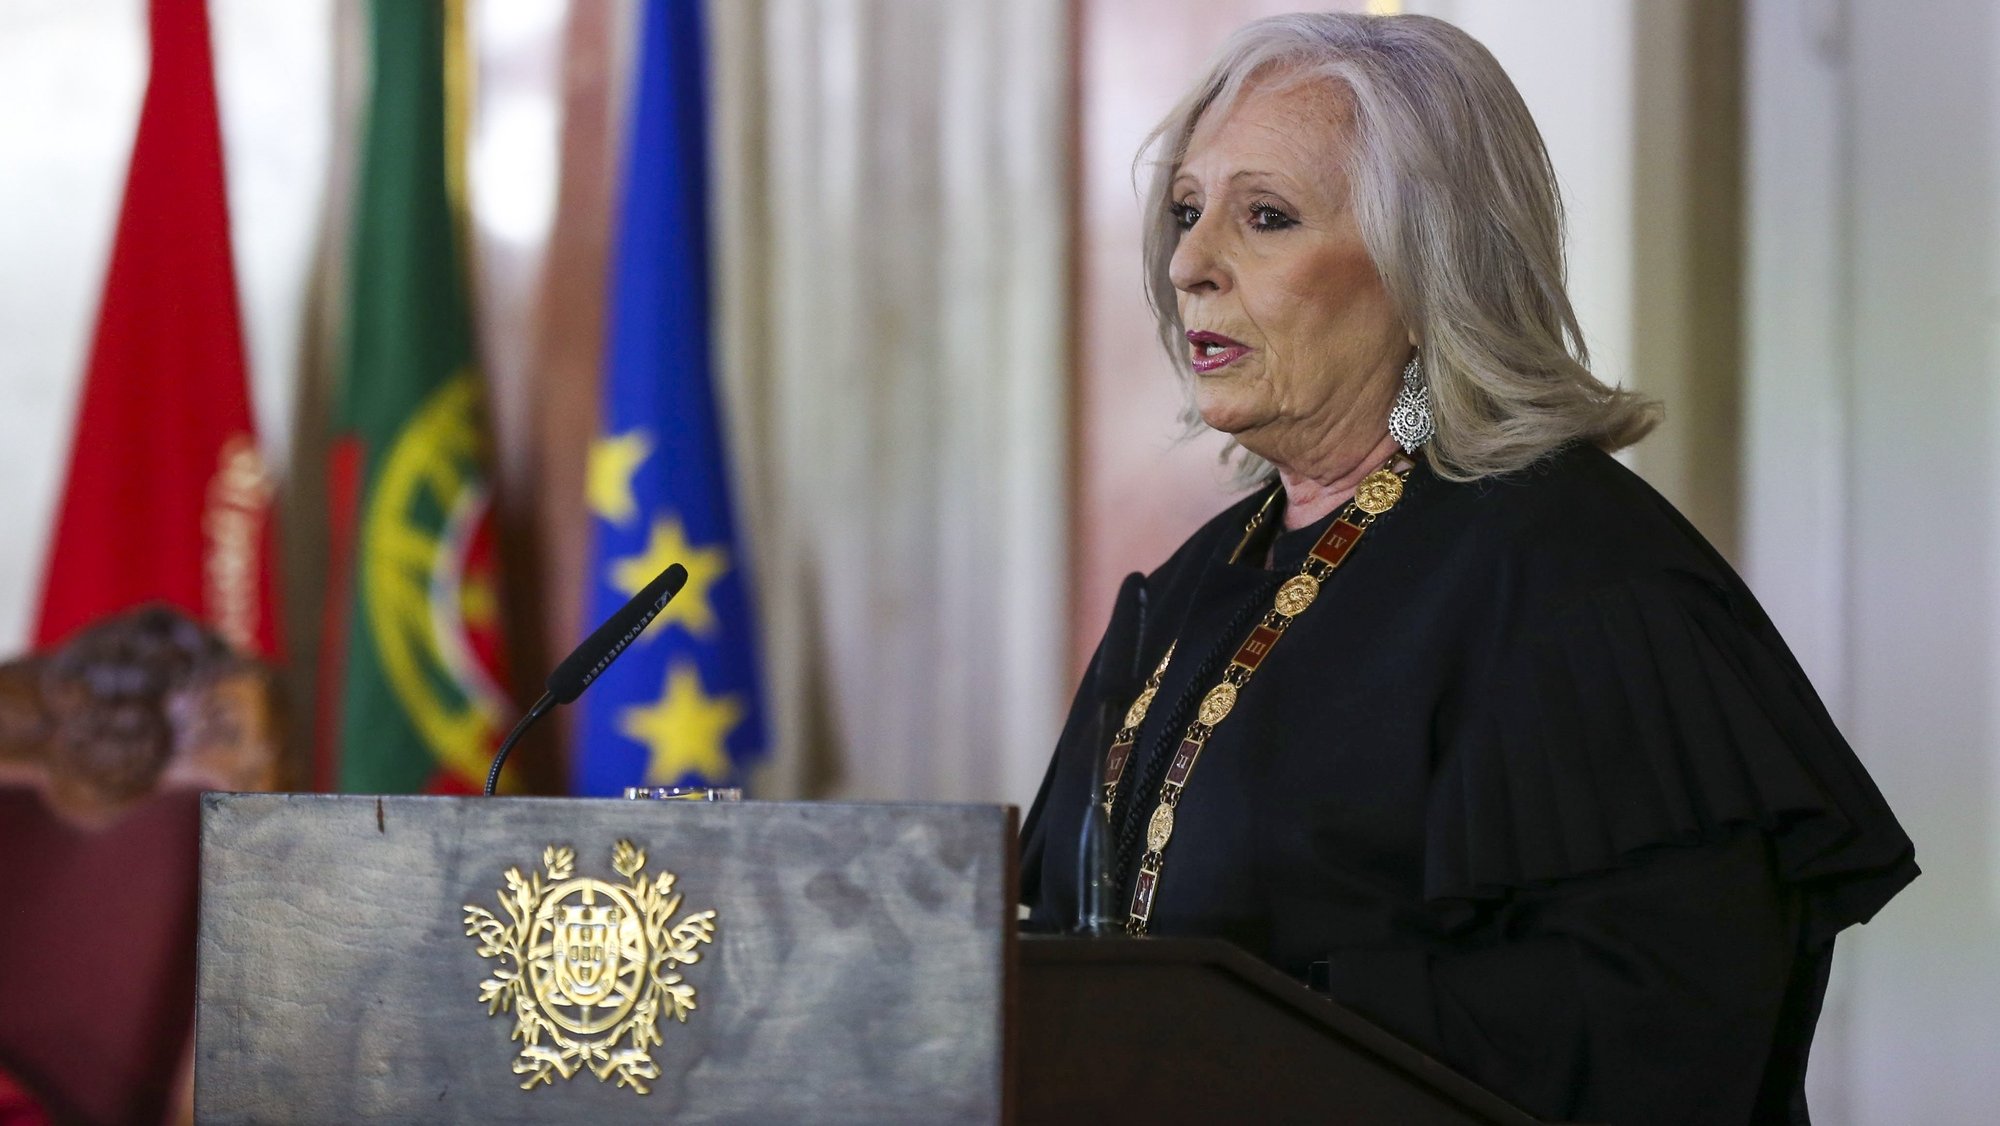 O procuradora-geral da República, Lucília Gago, intervém na cerimónia de abertura do Ano Judicial, no Salão Nobre do Supremo Tribunal de Justiça, em Lisboa, 20 de abril de 2022. MANUEL DE ALMEIDA/LUSA